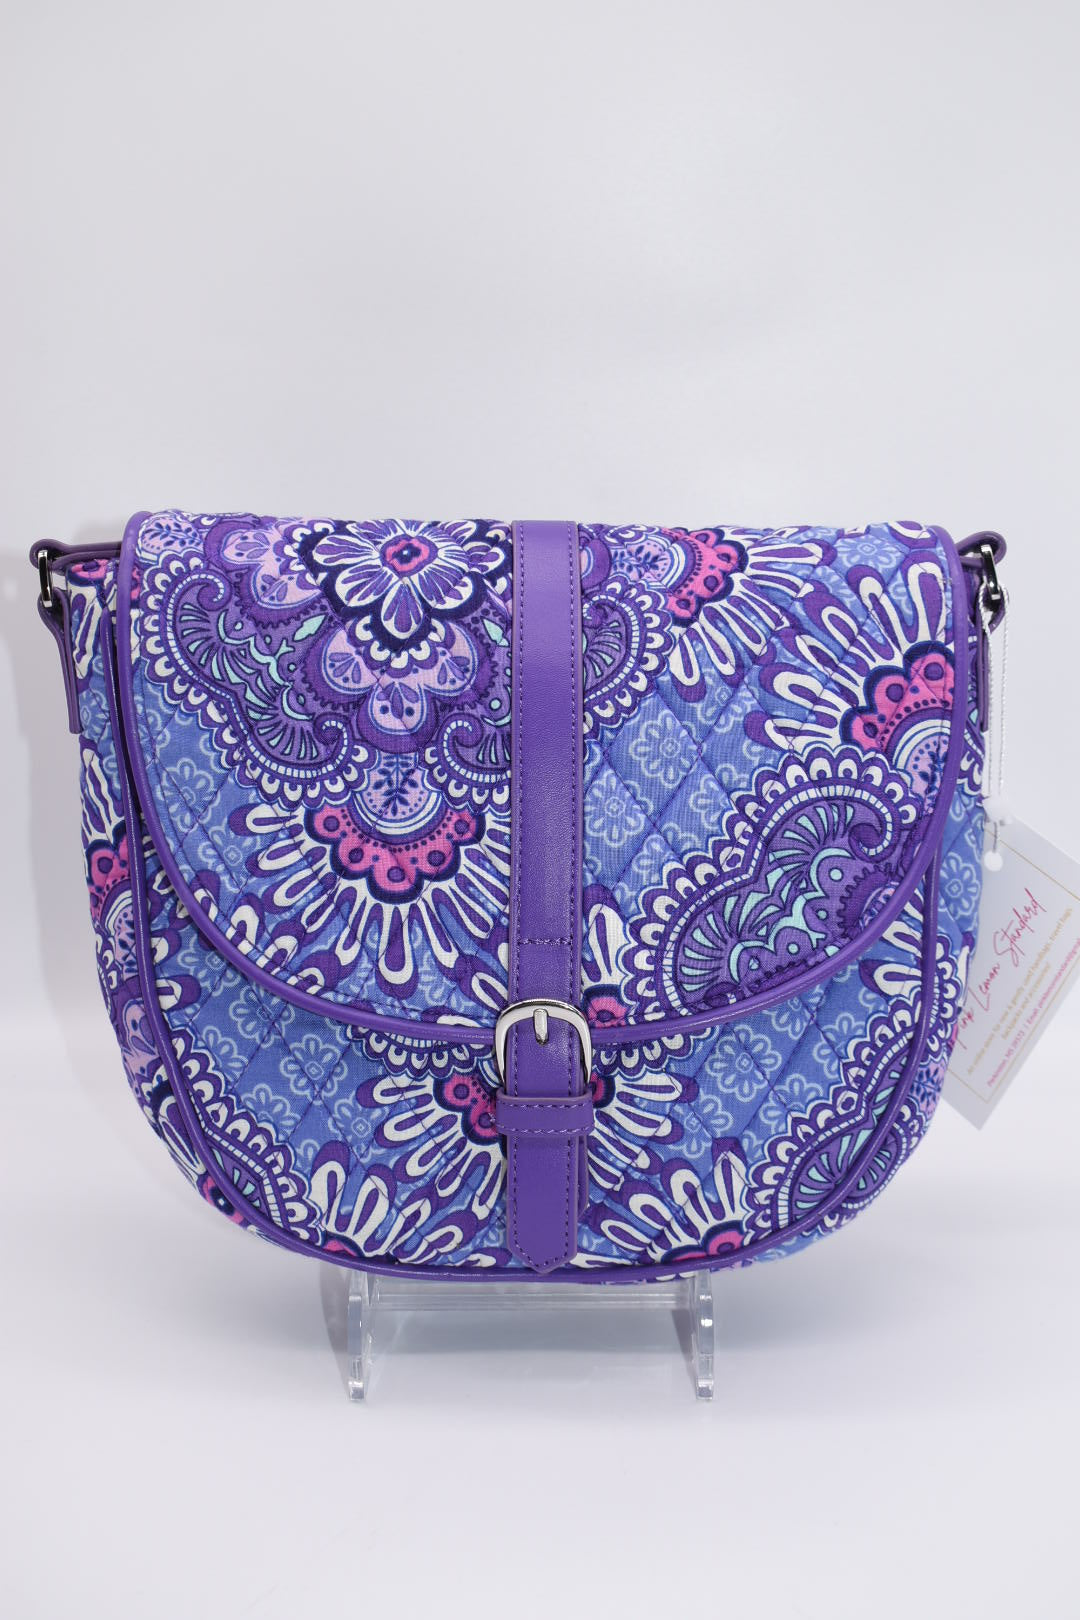 Vera Bradley "Lilac Tapestry" Slim Saddle Bag